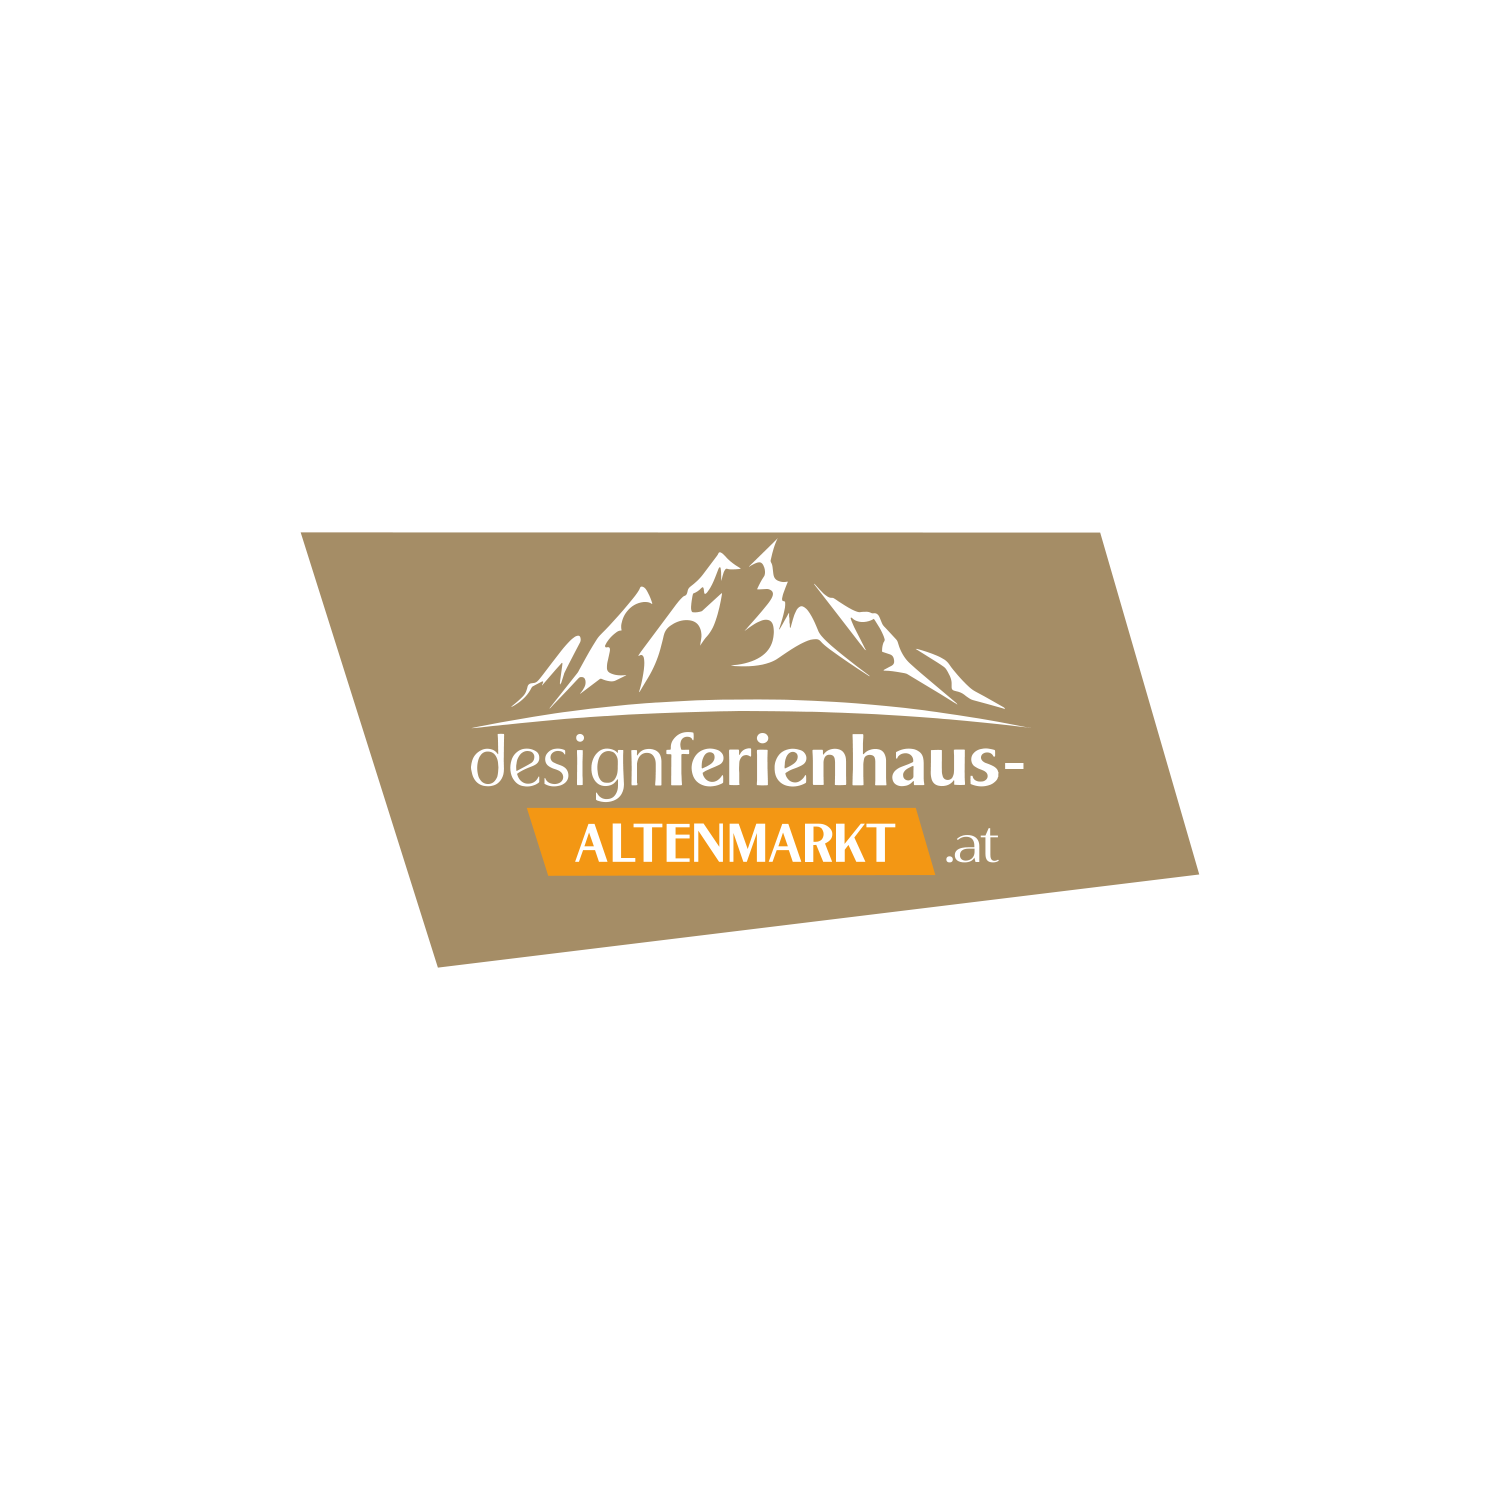 Designerferienhaus ALTENMARKT Logo